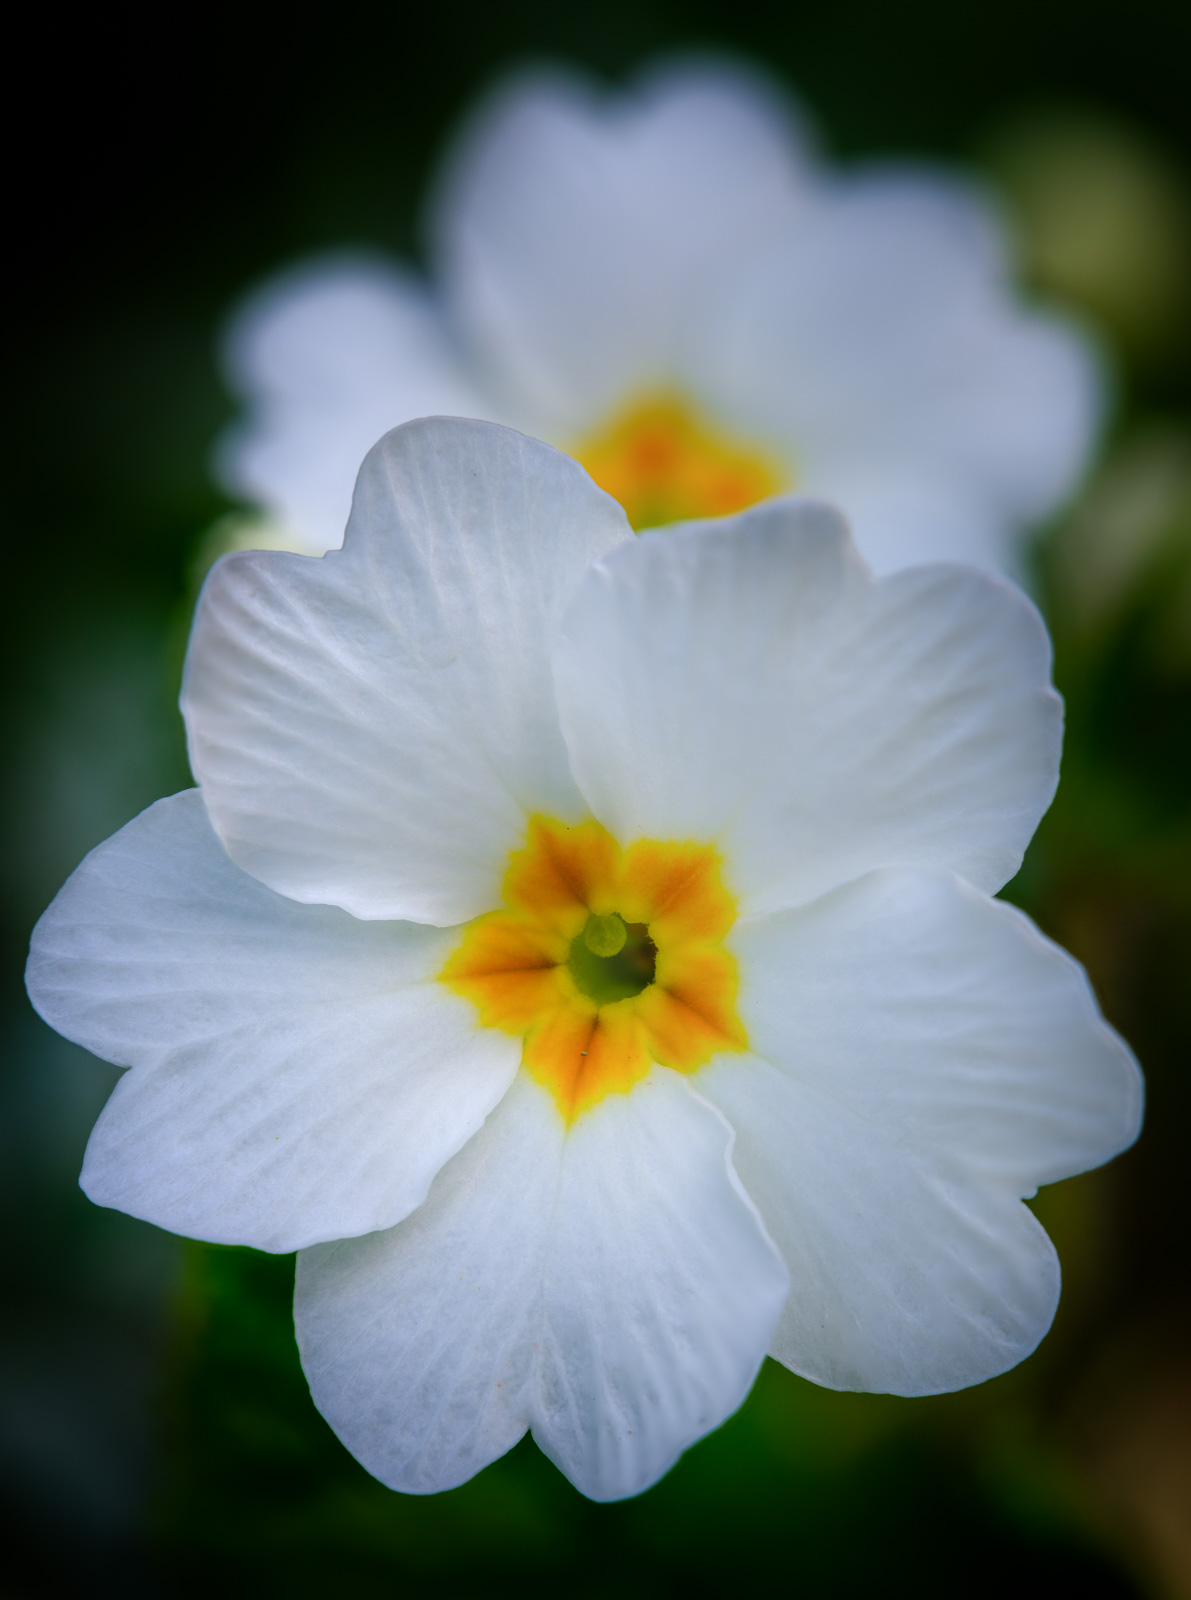 White primrose (Primula).